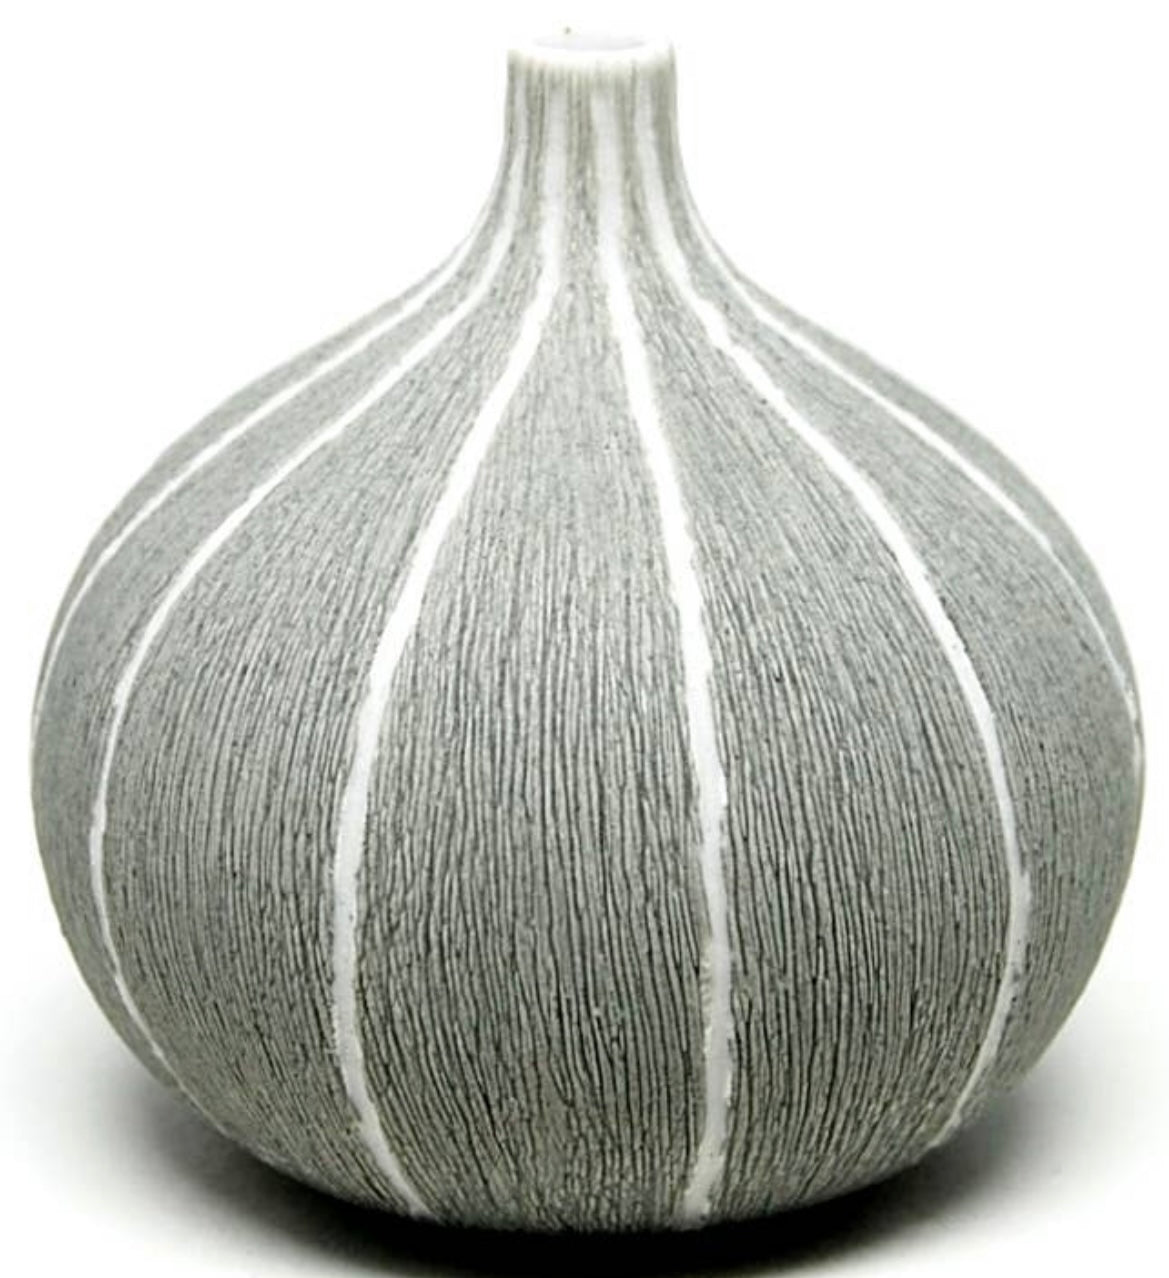 Small Porcelain Bud Vase - Beige/White